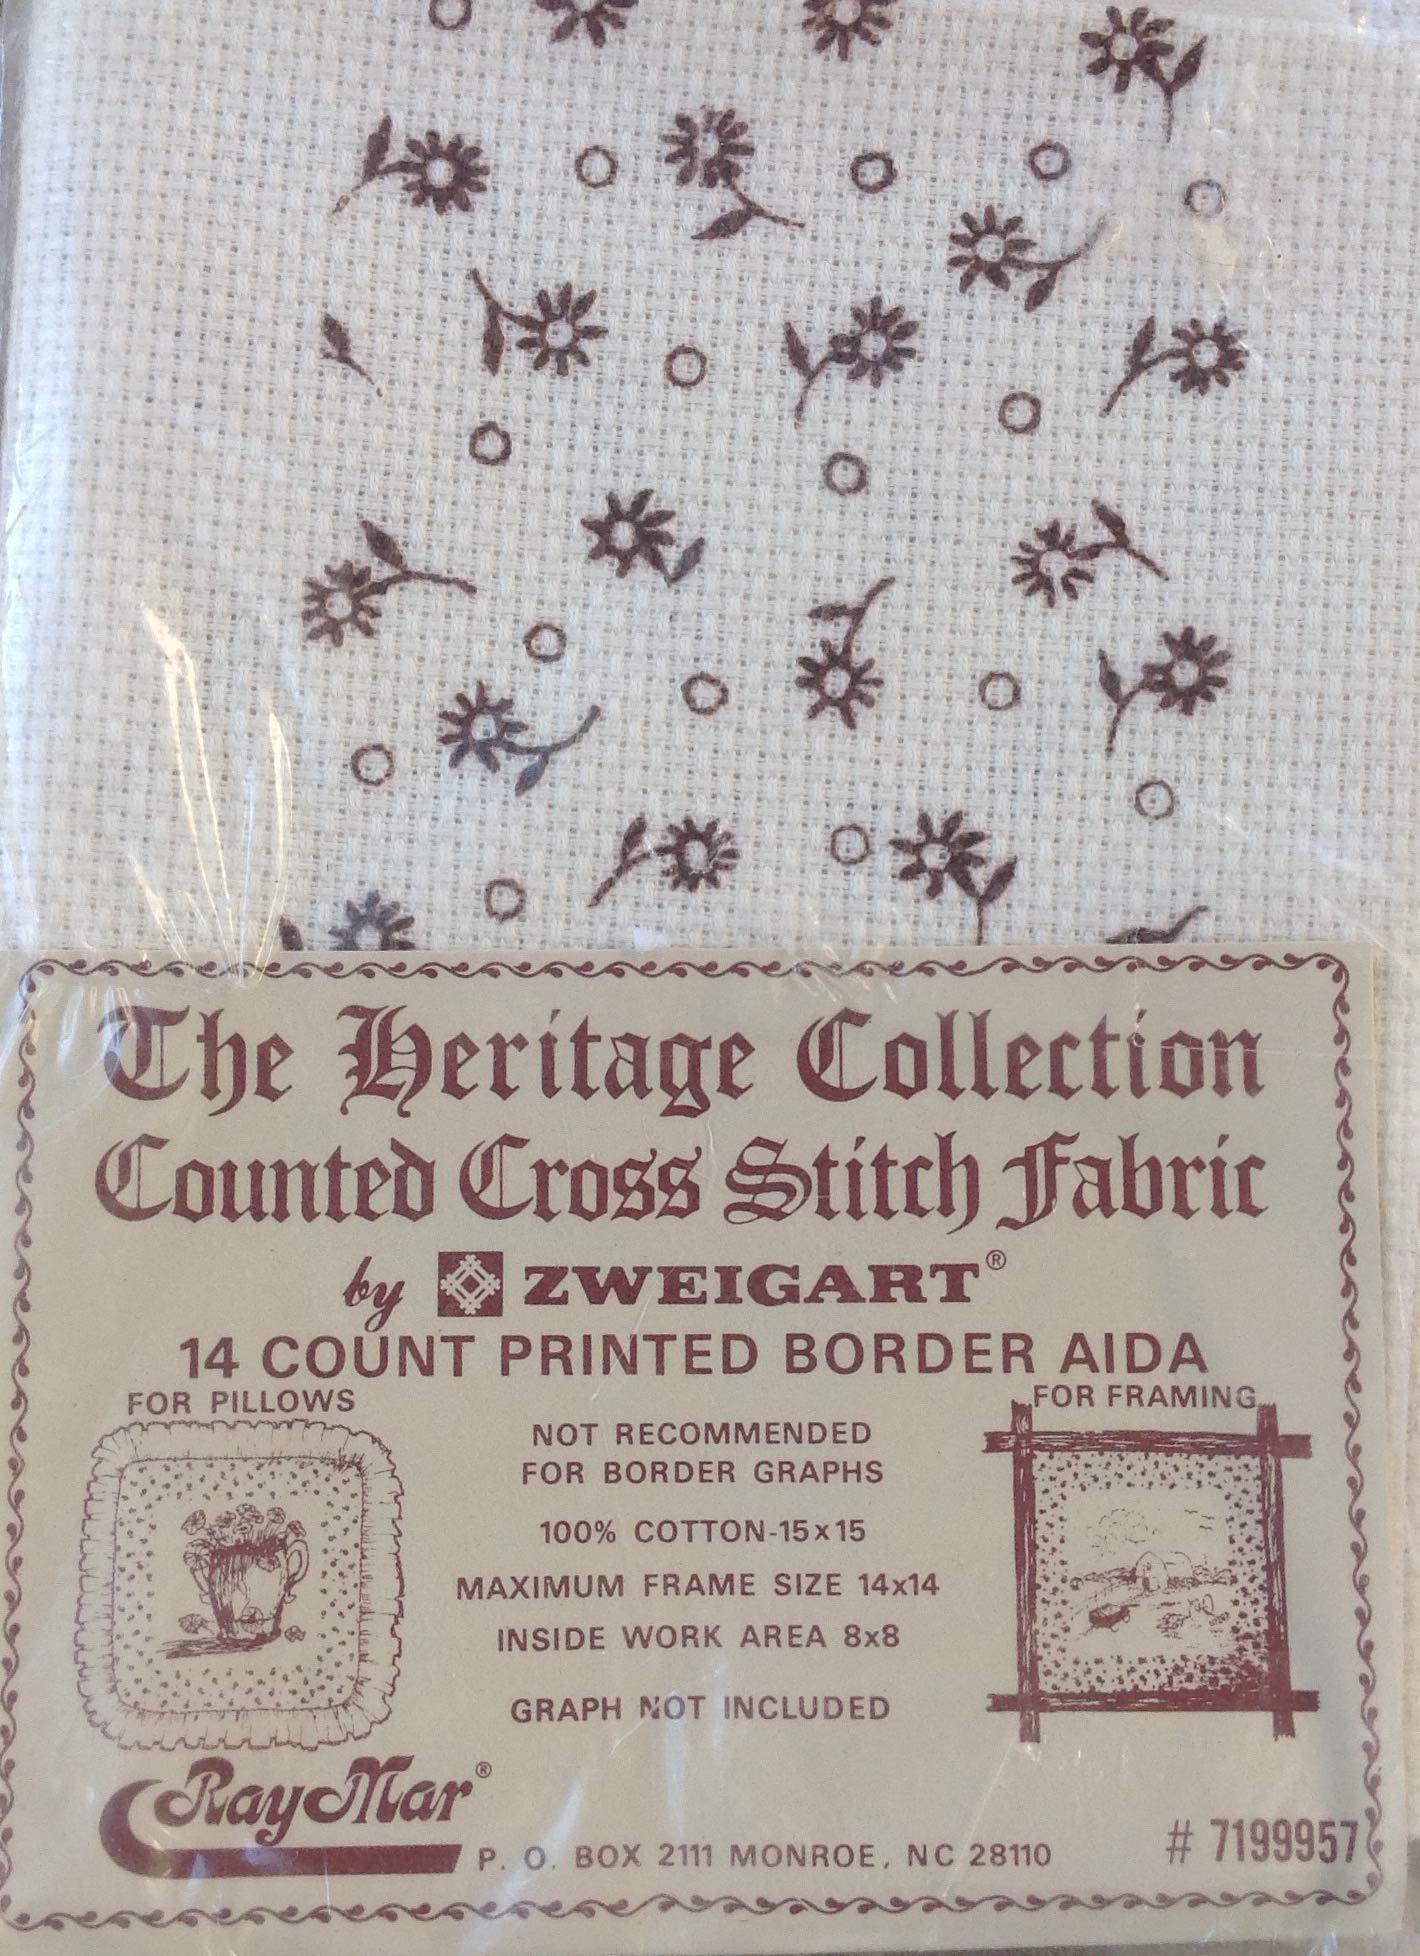 Raymar raymar cross stitch fabric 14 count - border aida - brown flowers